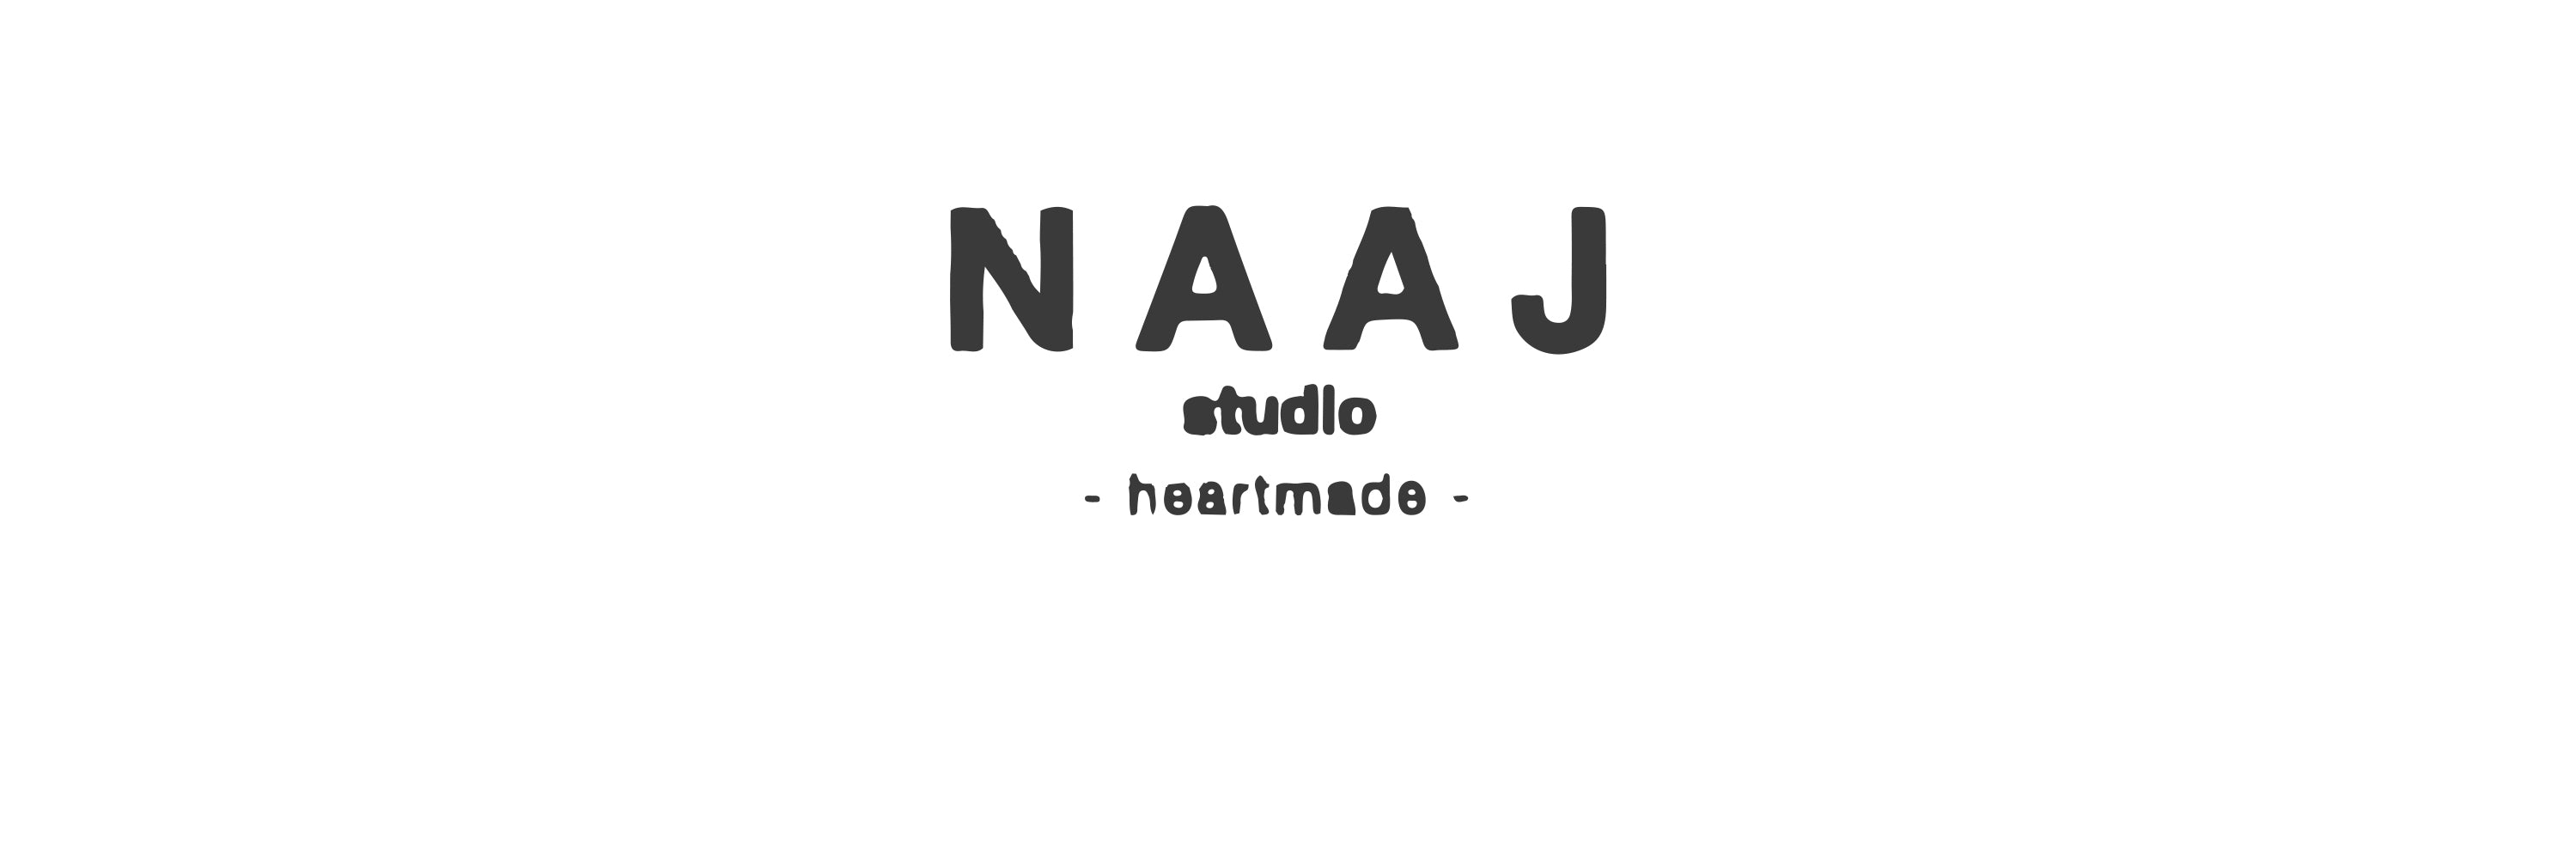 N A A J studio